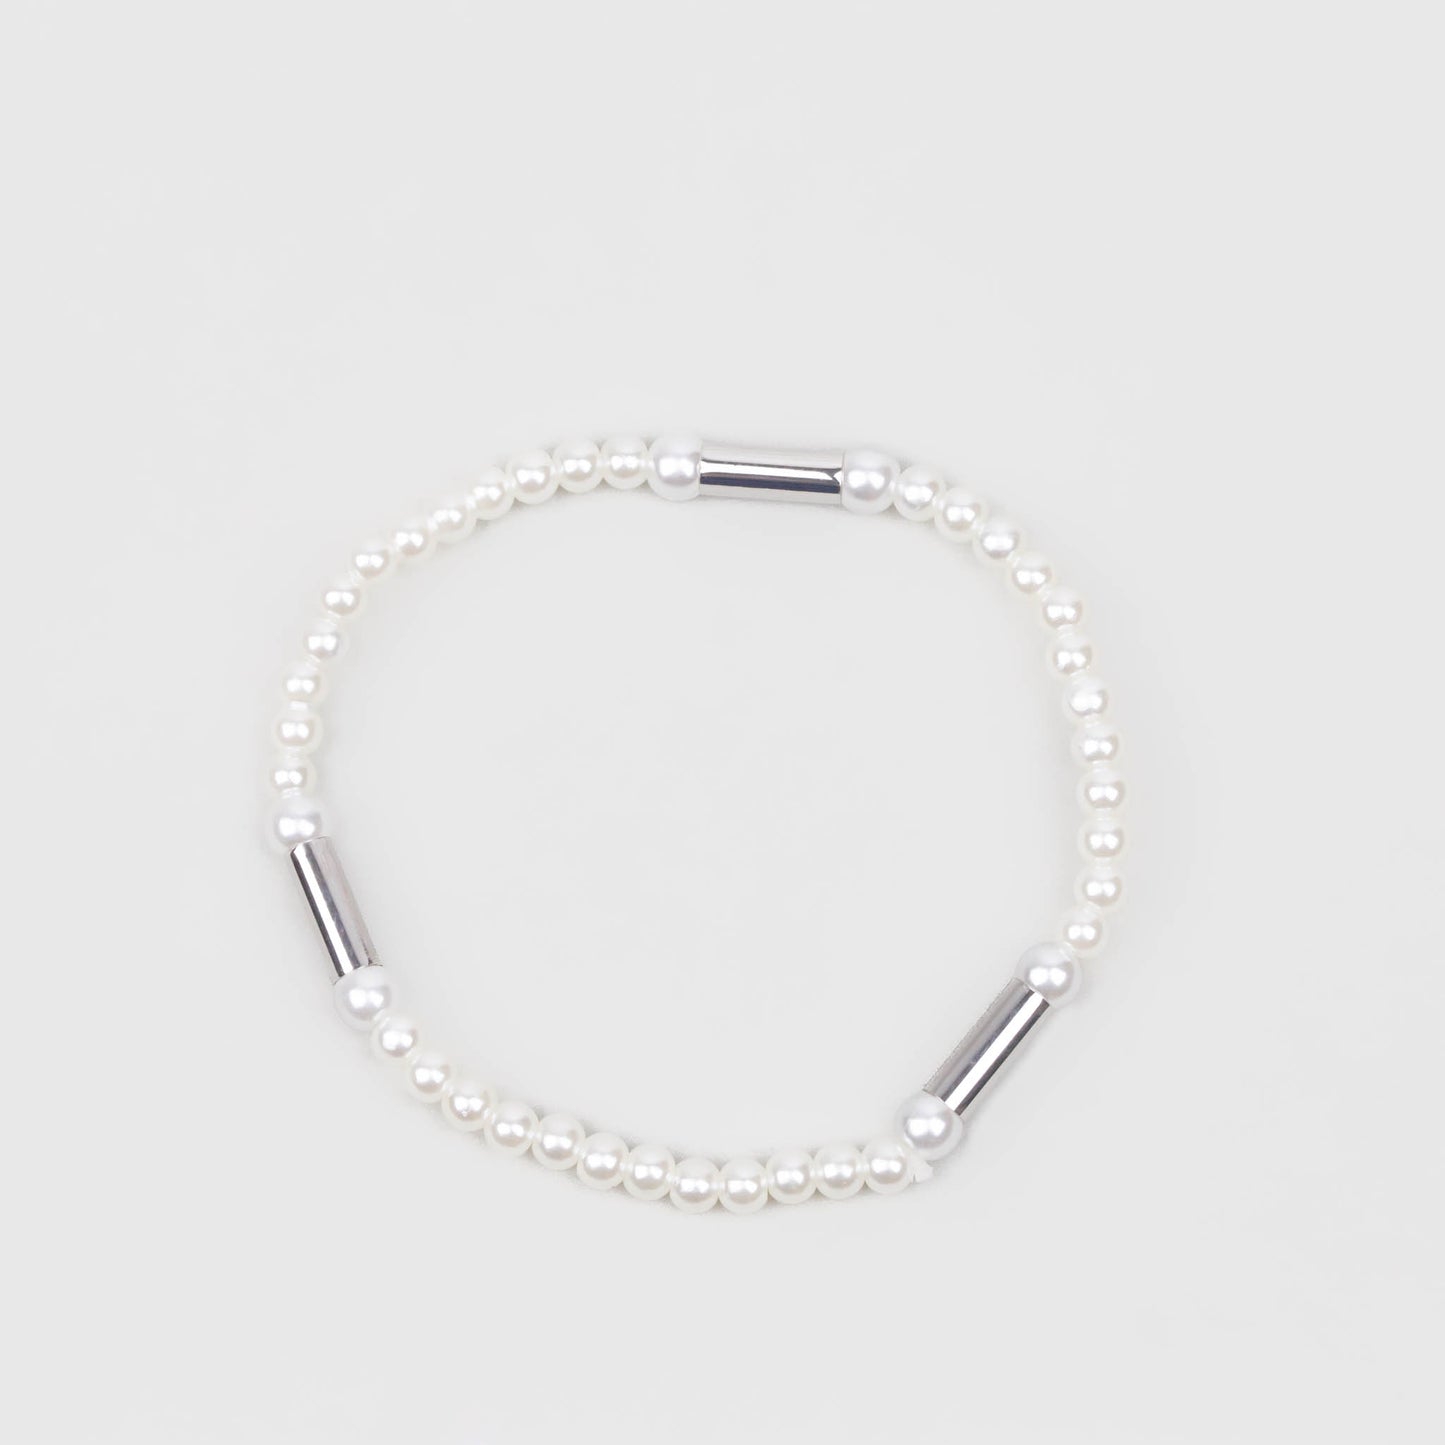 Brățară elastică cu perle mici și secțiuni argintii - Alb